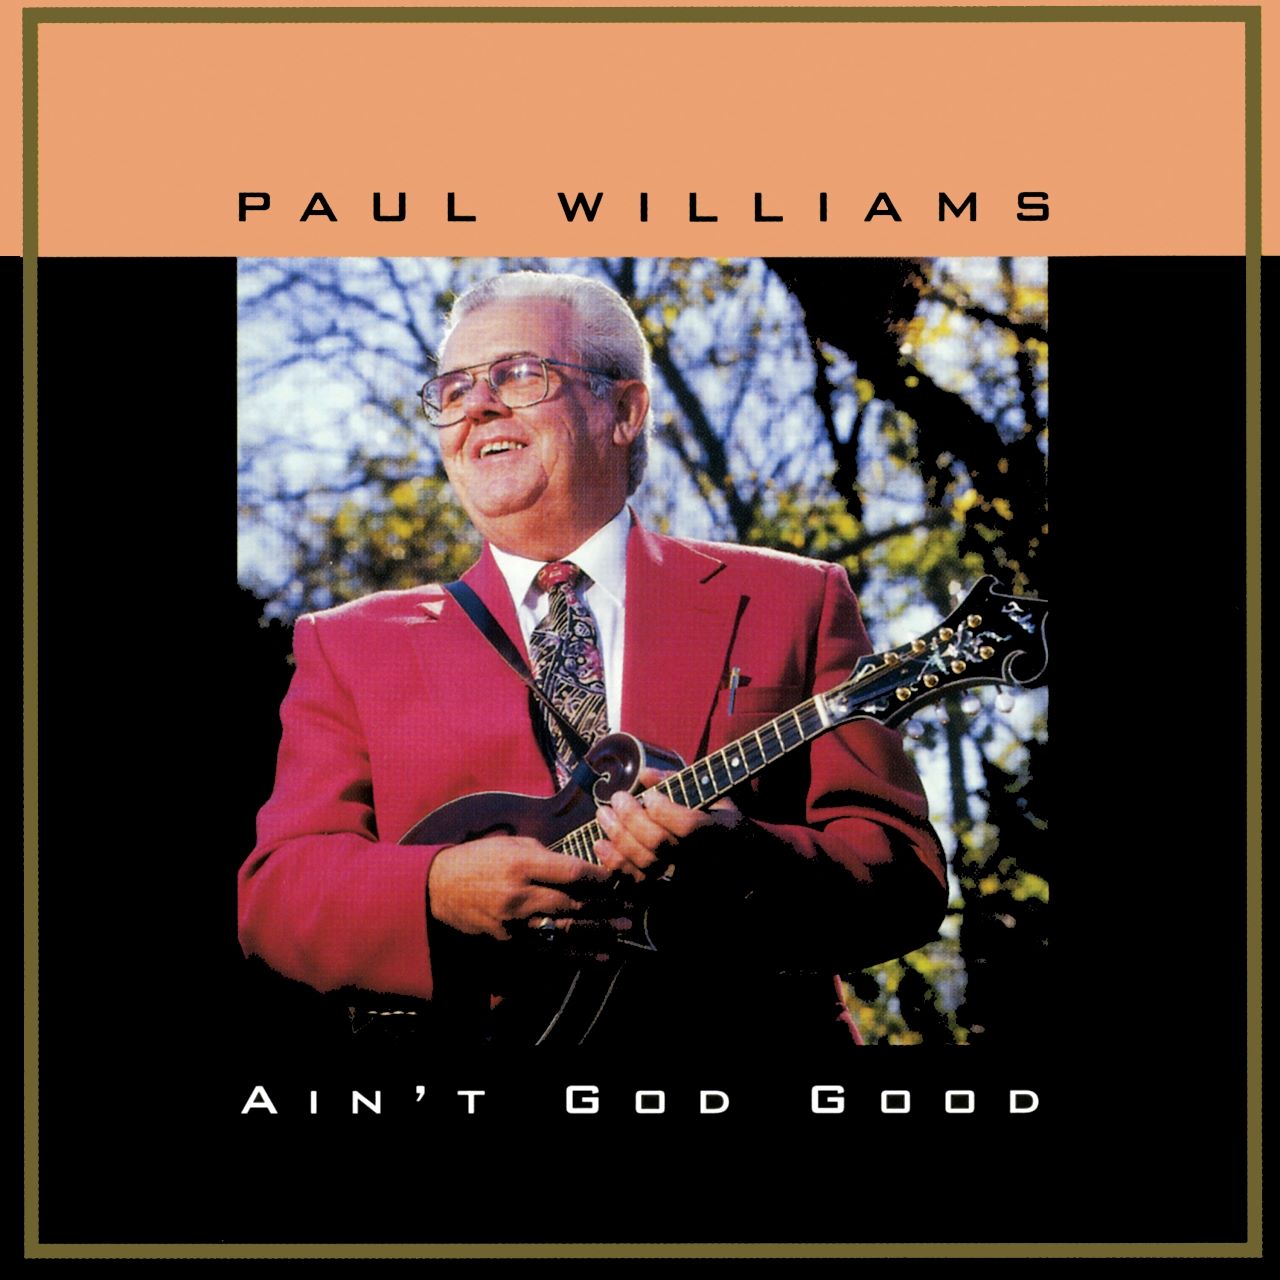 Paul Williams - Ain't God Good cover album